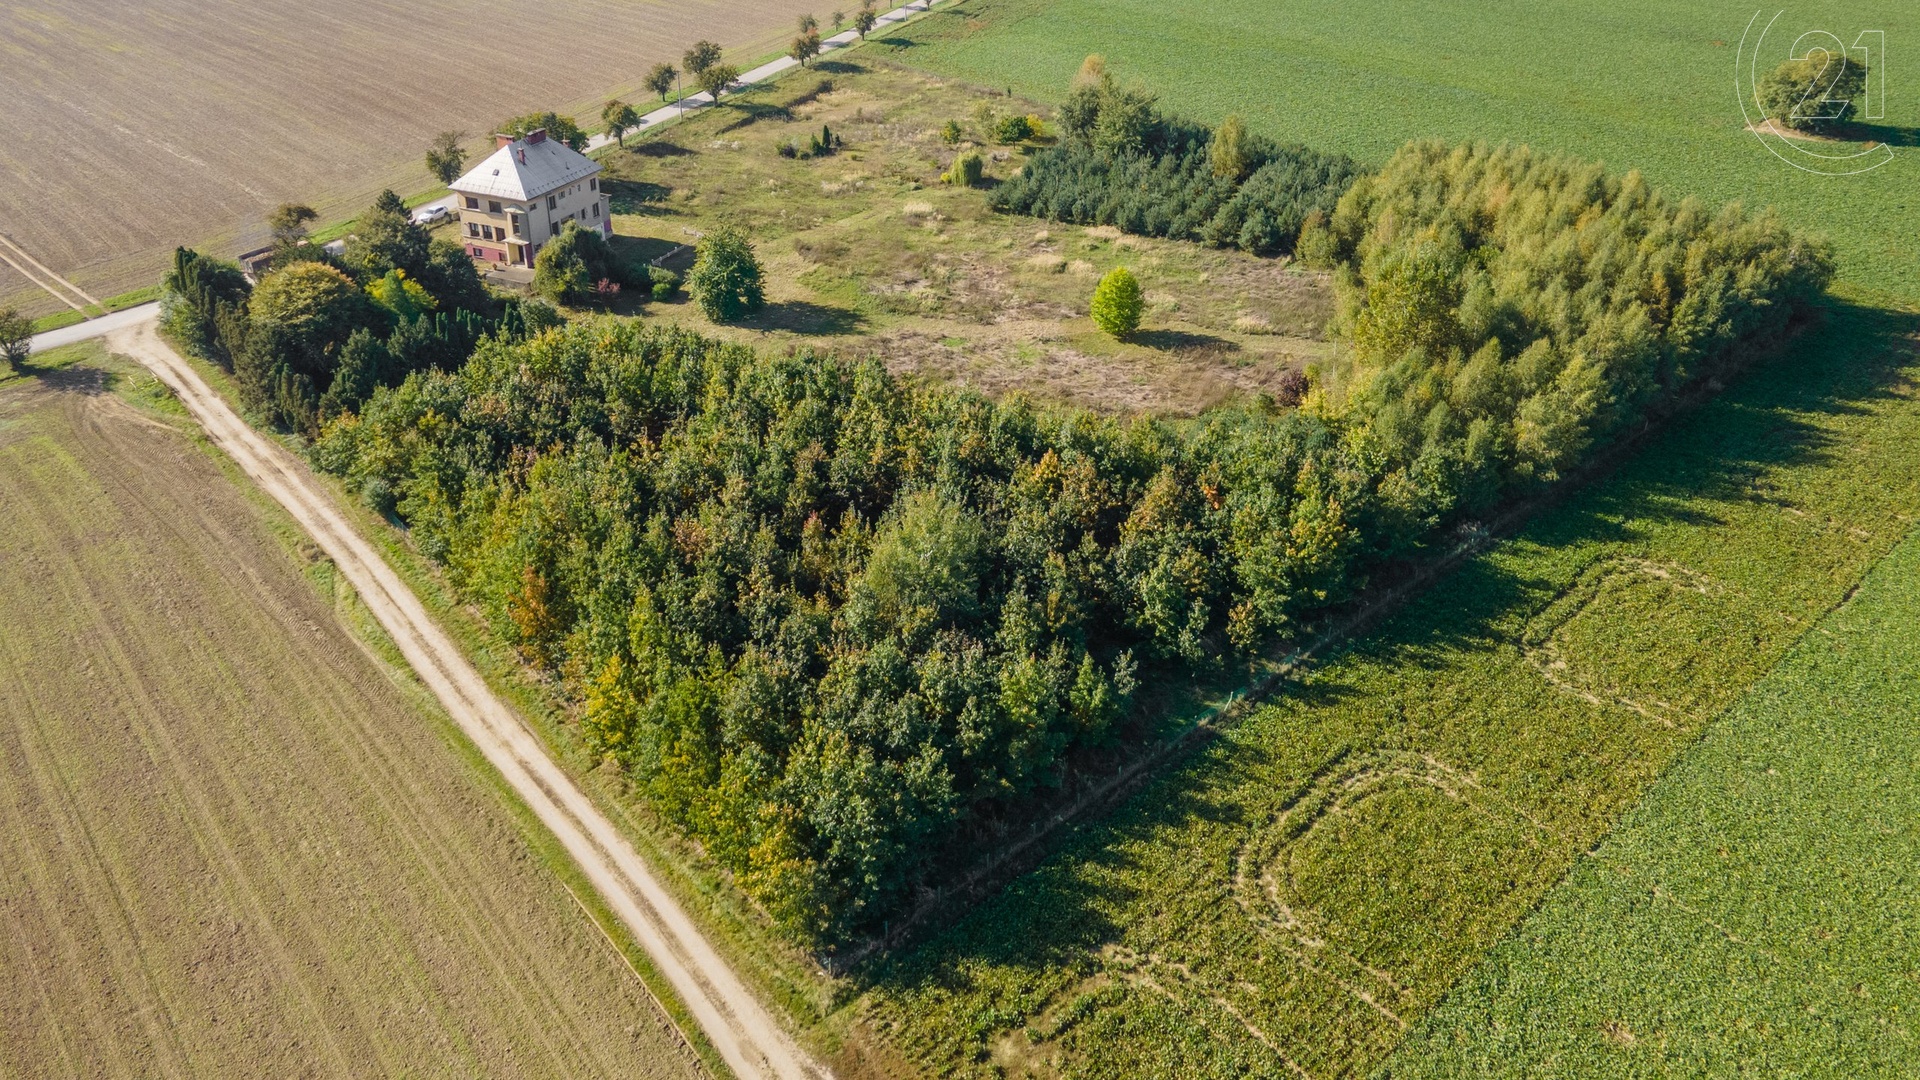 Prodej stavebního pozemku číslo 16 (parc. číslo 340/29) , 1126 m² - Uničov - Renoty